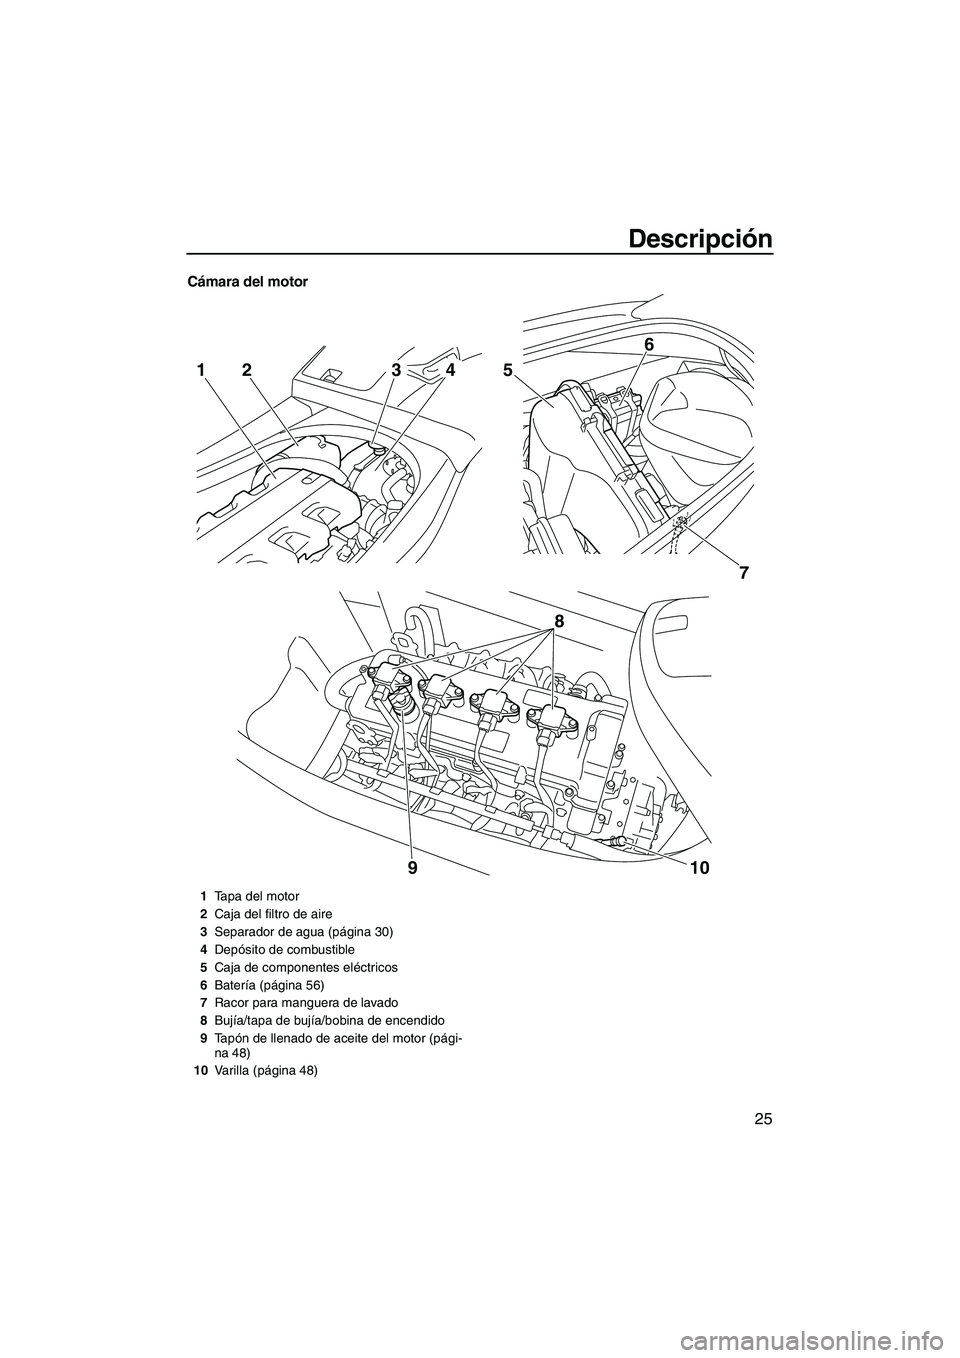 YAMAHA VXS 2012  Manuale de Empleo (in Spanish) Descripción
25
Cámara del motor
7 5
6
8
10 9
2143
1Tapa del motor
2Caja del filtro de aire
3Separador de agua (página 30)
4Depósito de combustible
5Caja de componentes eléctricos
6Batería (pági